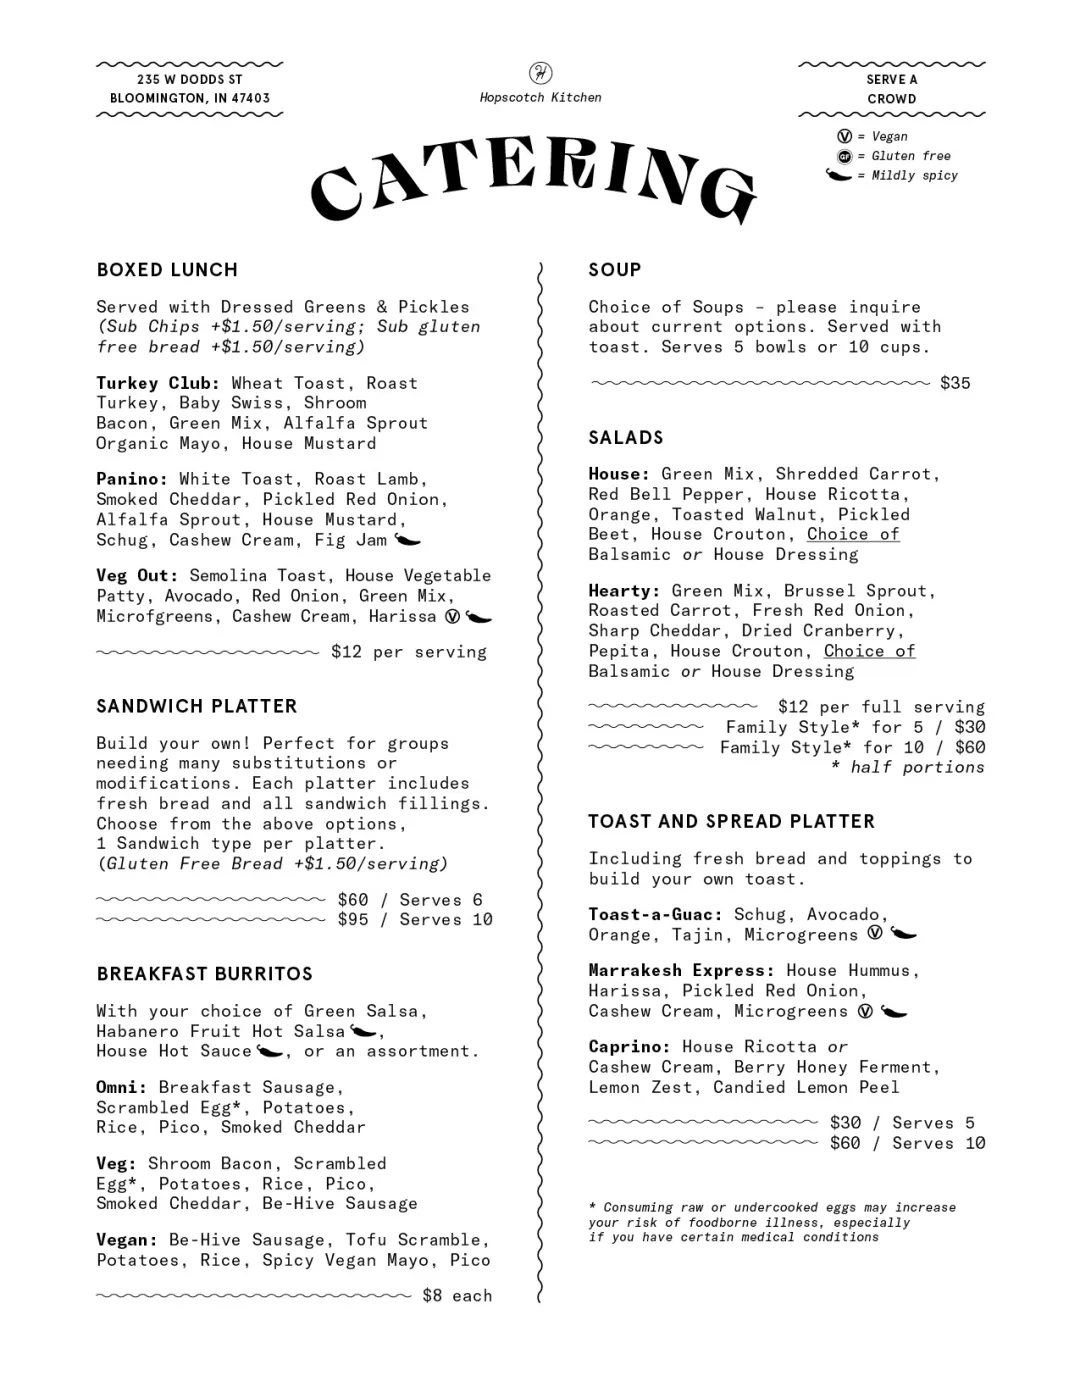 catering menu 1